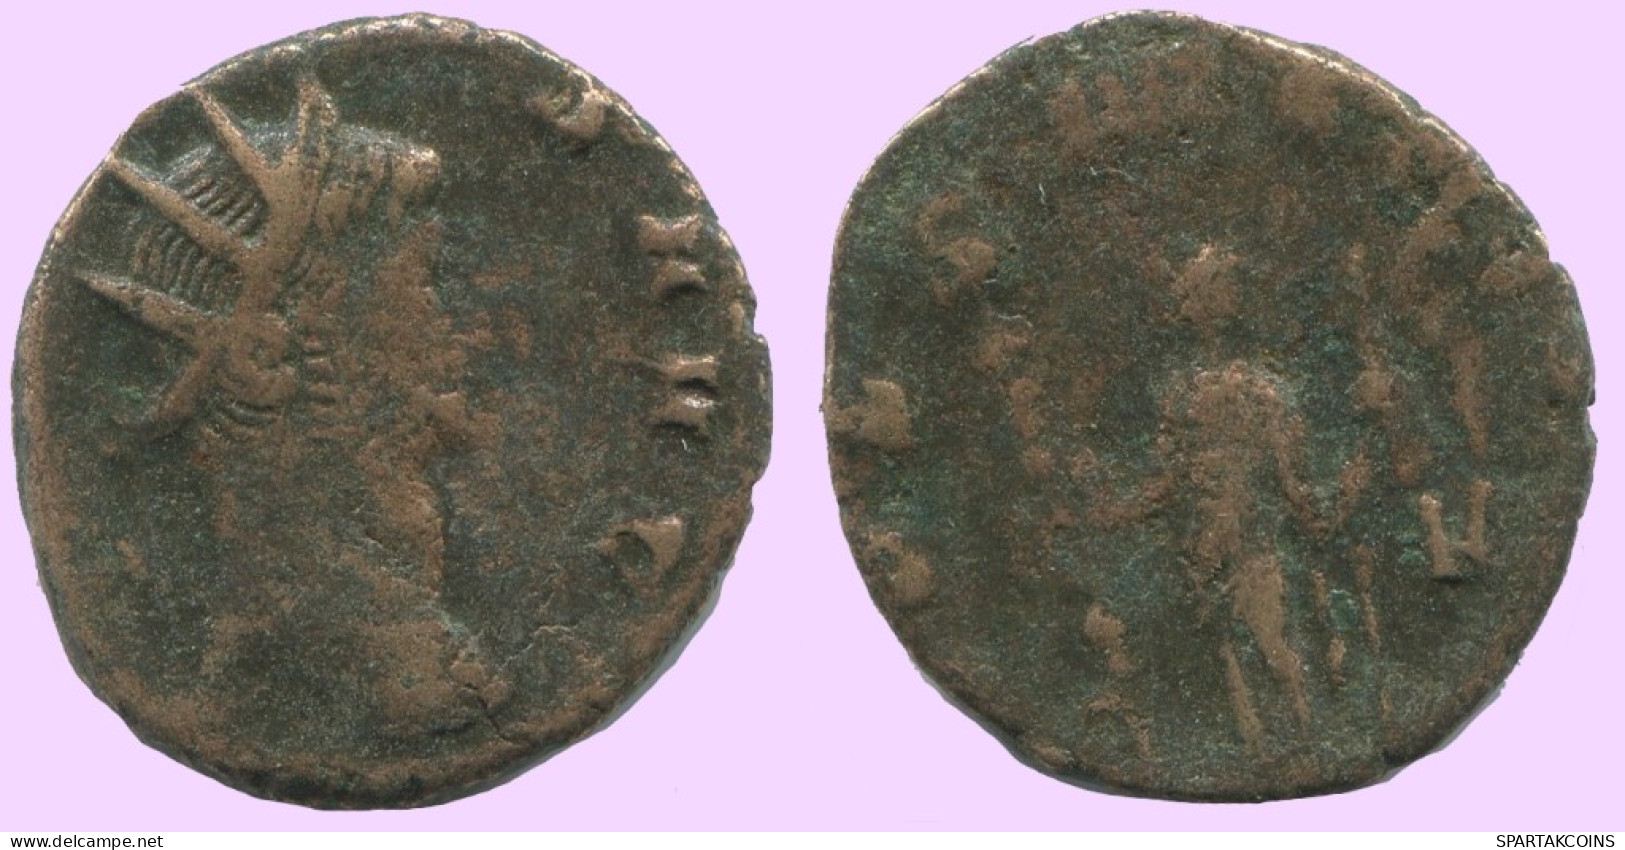 FOLLIS Antike Spätrömische Münze RÖMISCHE Münze 2.5g/16mm #ANT2042.7.D.A - La Fin De L'Empire (363-476)